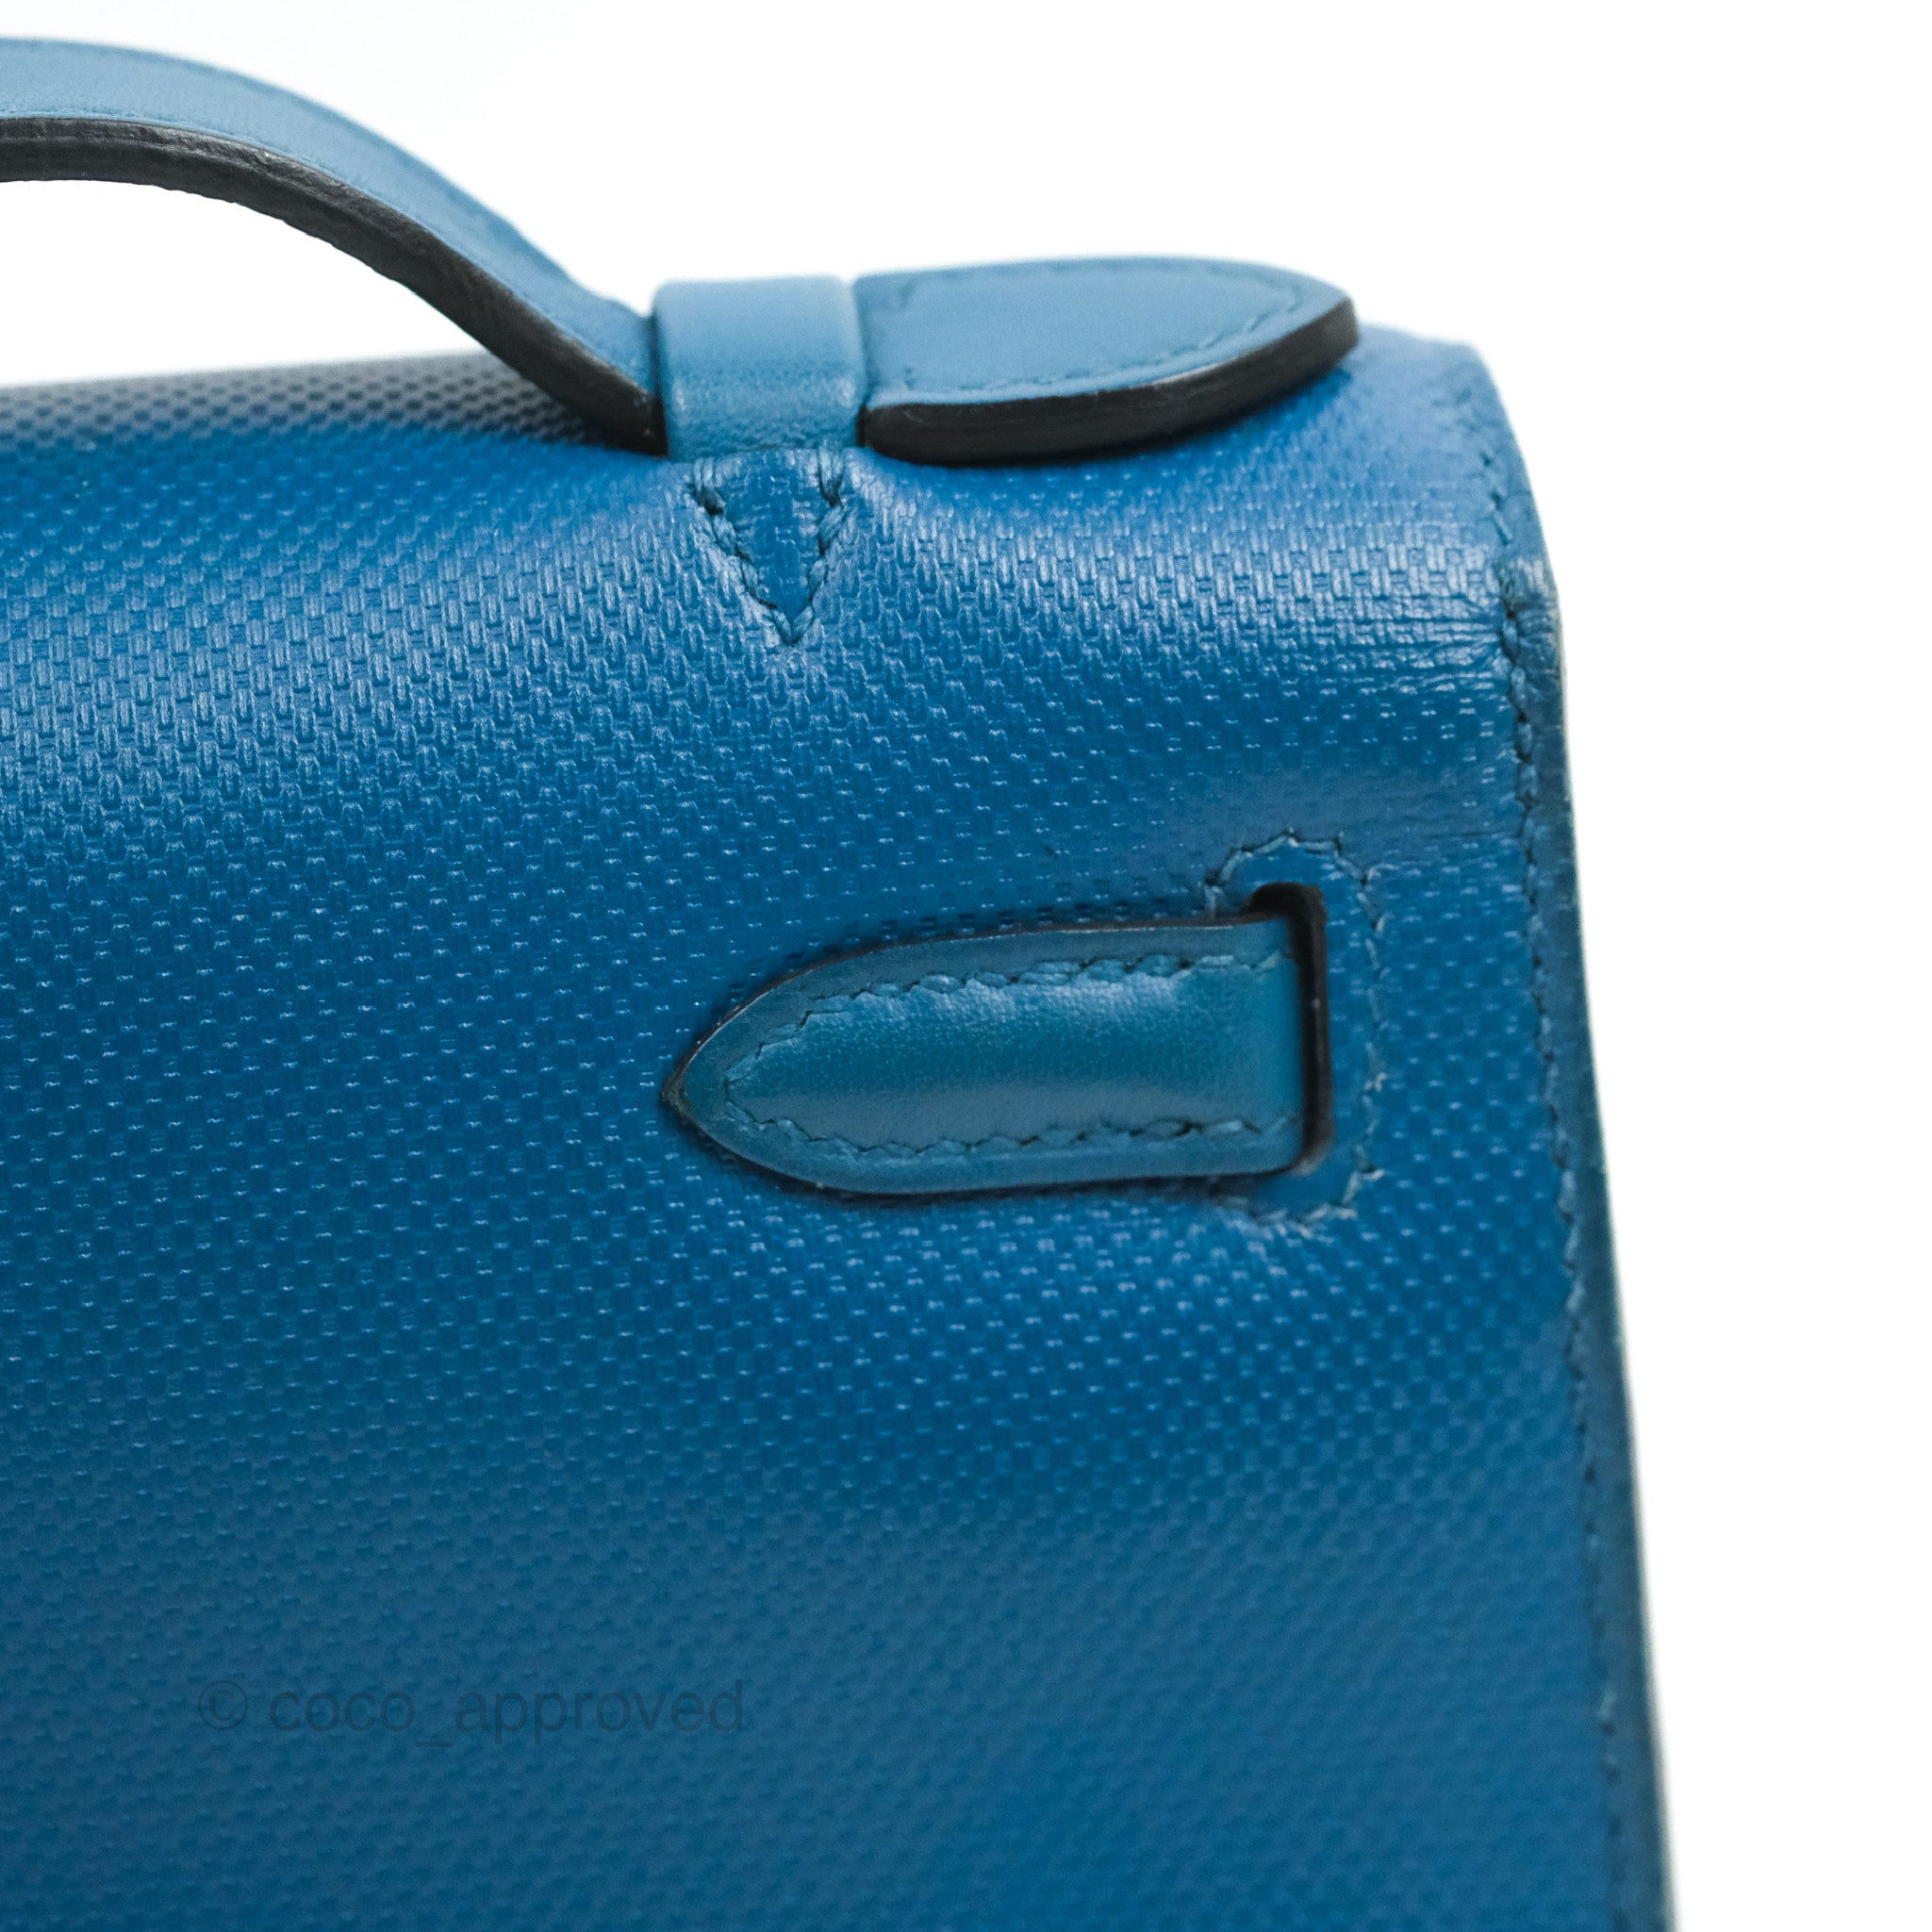 Hermes Blue Box Leather Palladium Hardware Kelly Pochette Bag Hermes